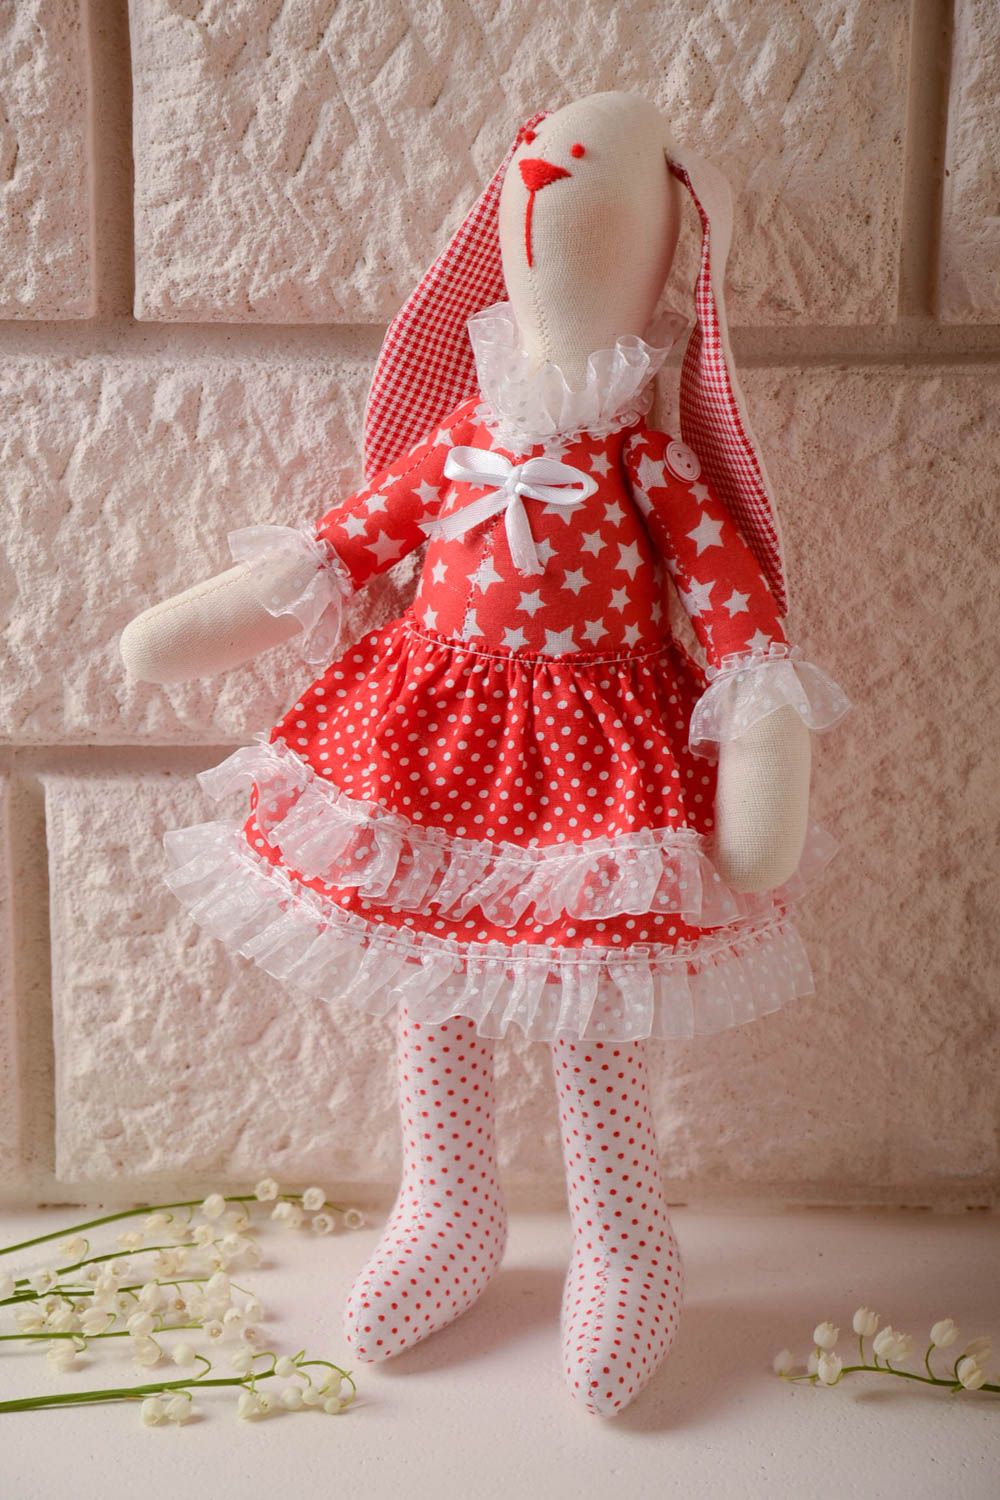 Текстильная игрушка заяц в платье из хлопка ручной работы красивая красная фото 1